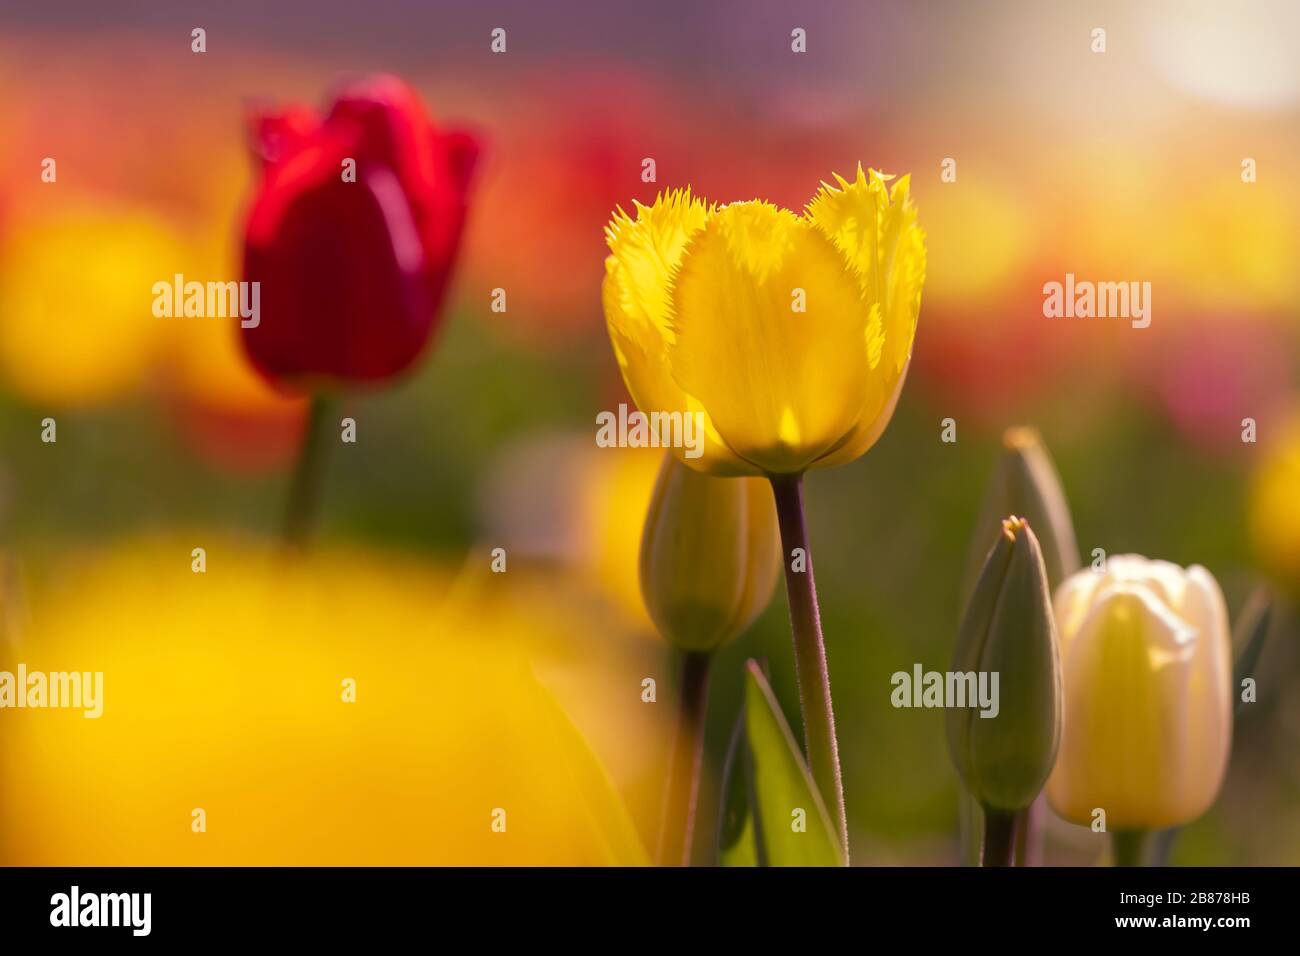 Campo tulipano con tulipani gialli e rossi in retroilluminazione, Germania. Fotografia con retroilluminazione Foto Stock